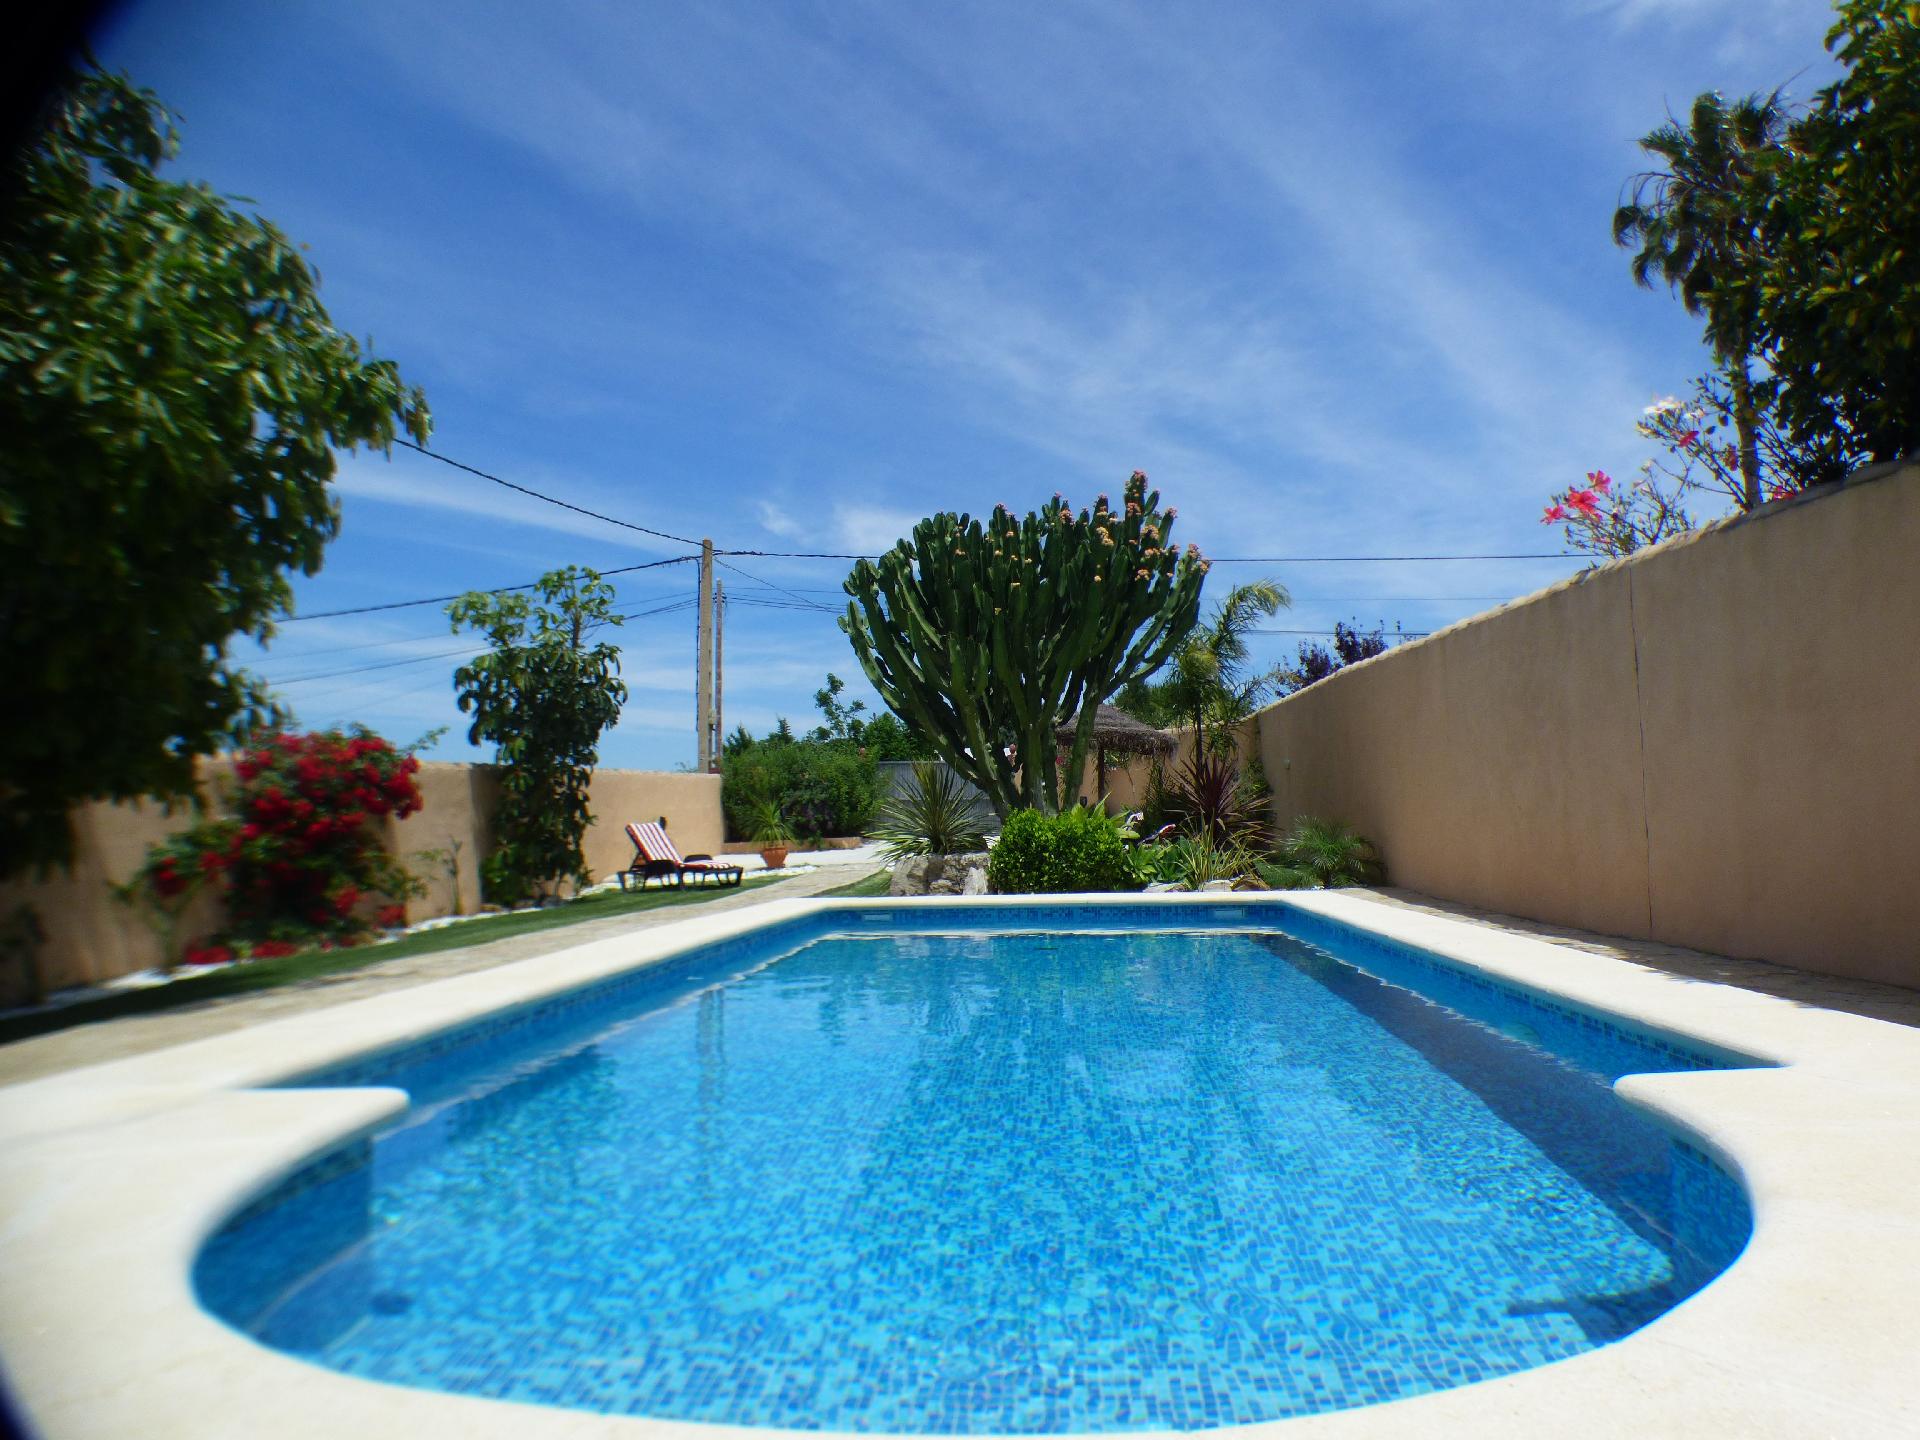 Ferienhaus mit privatem Pool für 5 Personen i  in Spanien